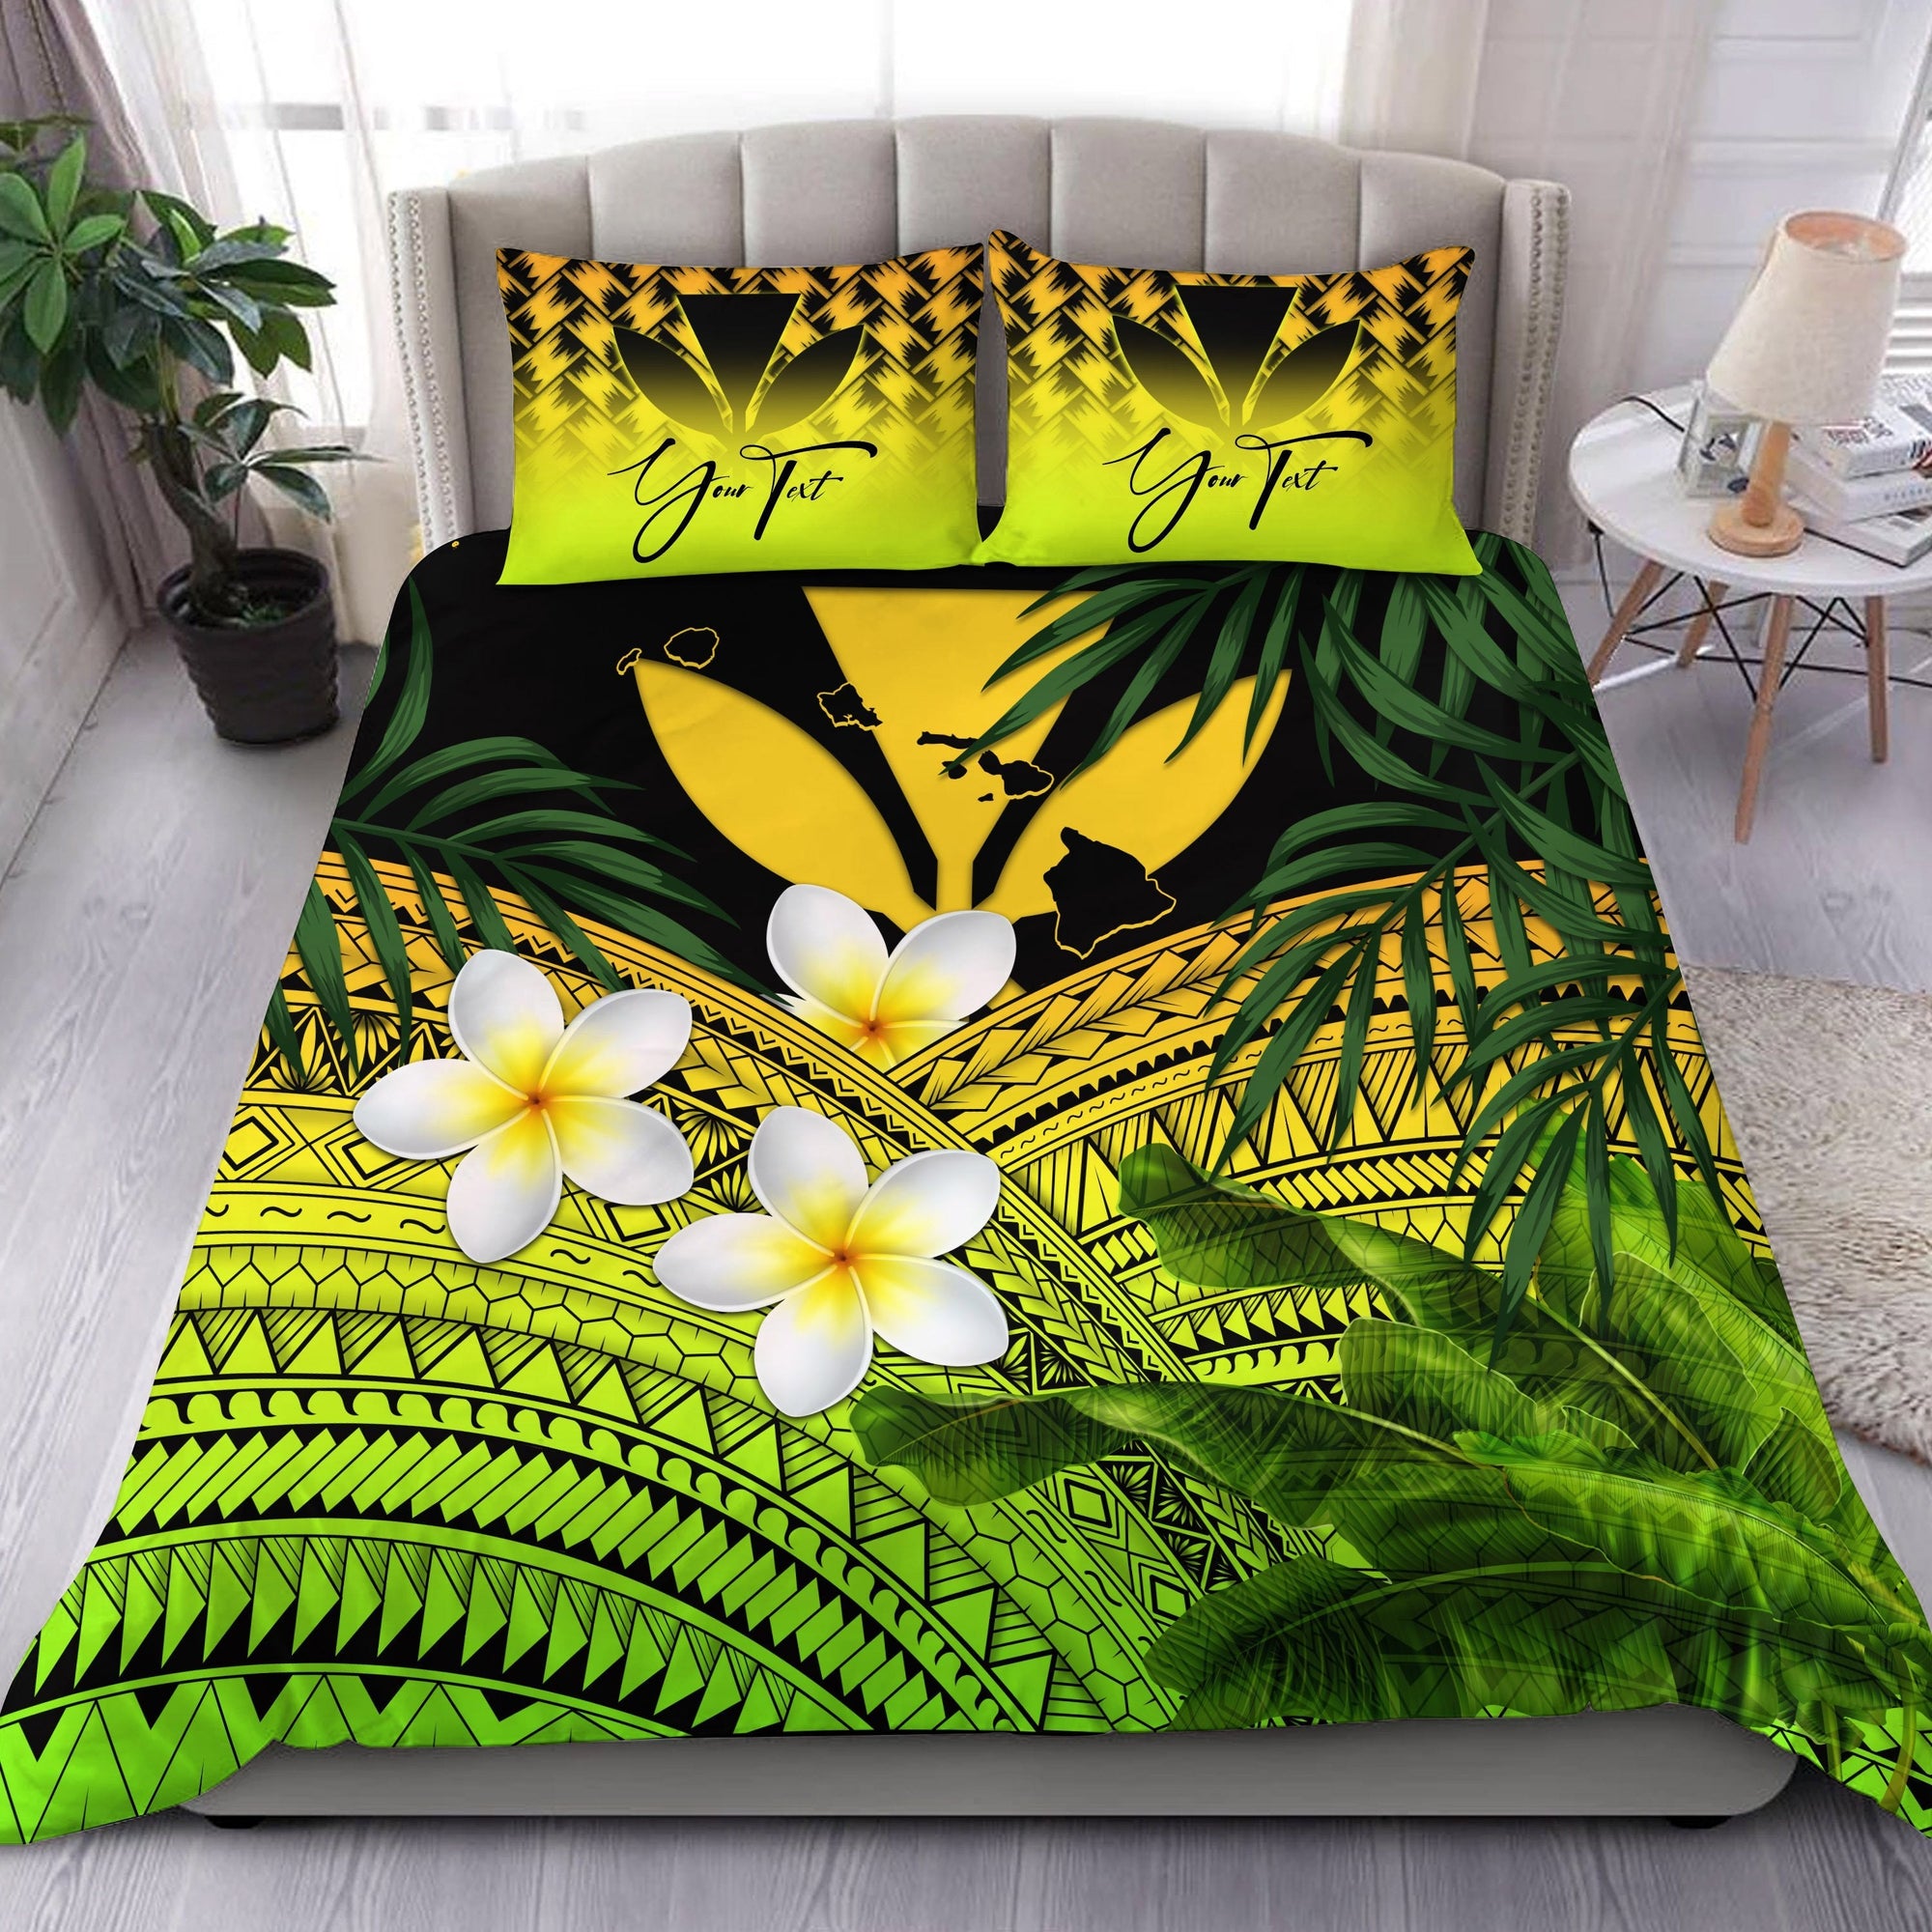 custom-kanaka-maoli-hawaiian-bedding-set-polynesian-plumeria-banana-leaves-yellow-personal-signature